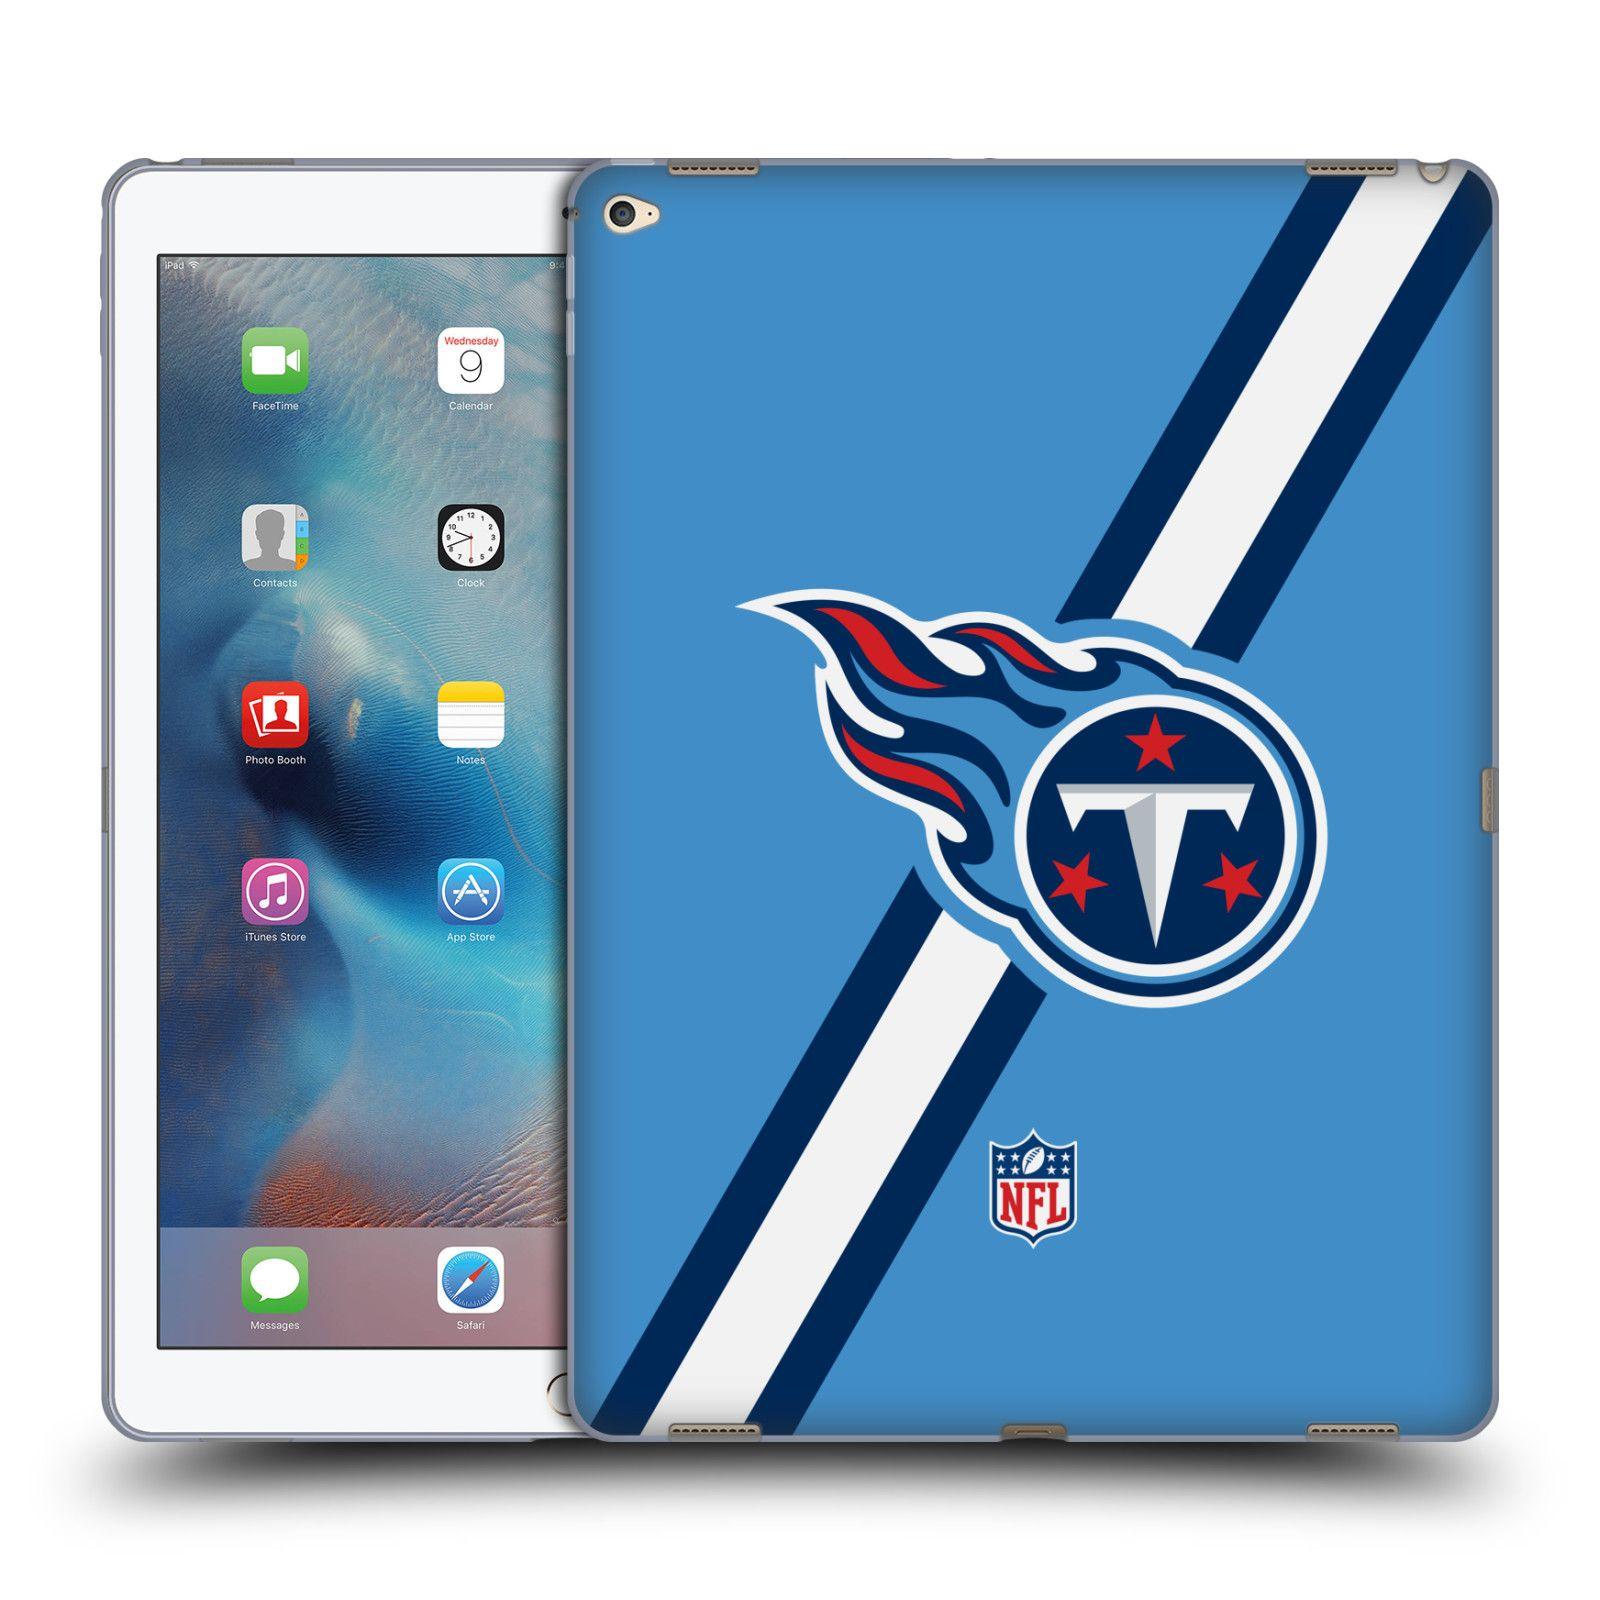 Samsung Tablet Logo - OFFICIAL NFL TENNESSEE TITANS LOGO SOFT GEL CASE FOR APPLE SAMSUNG